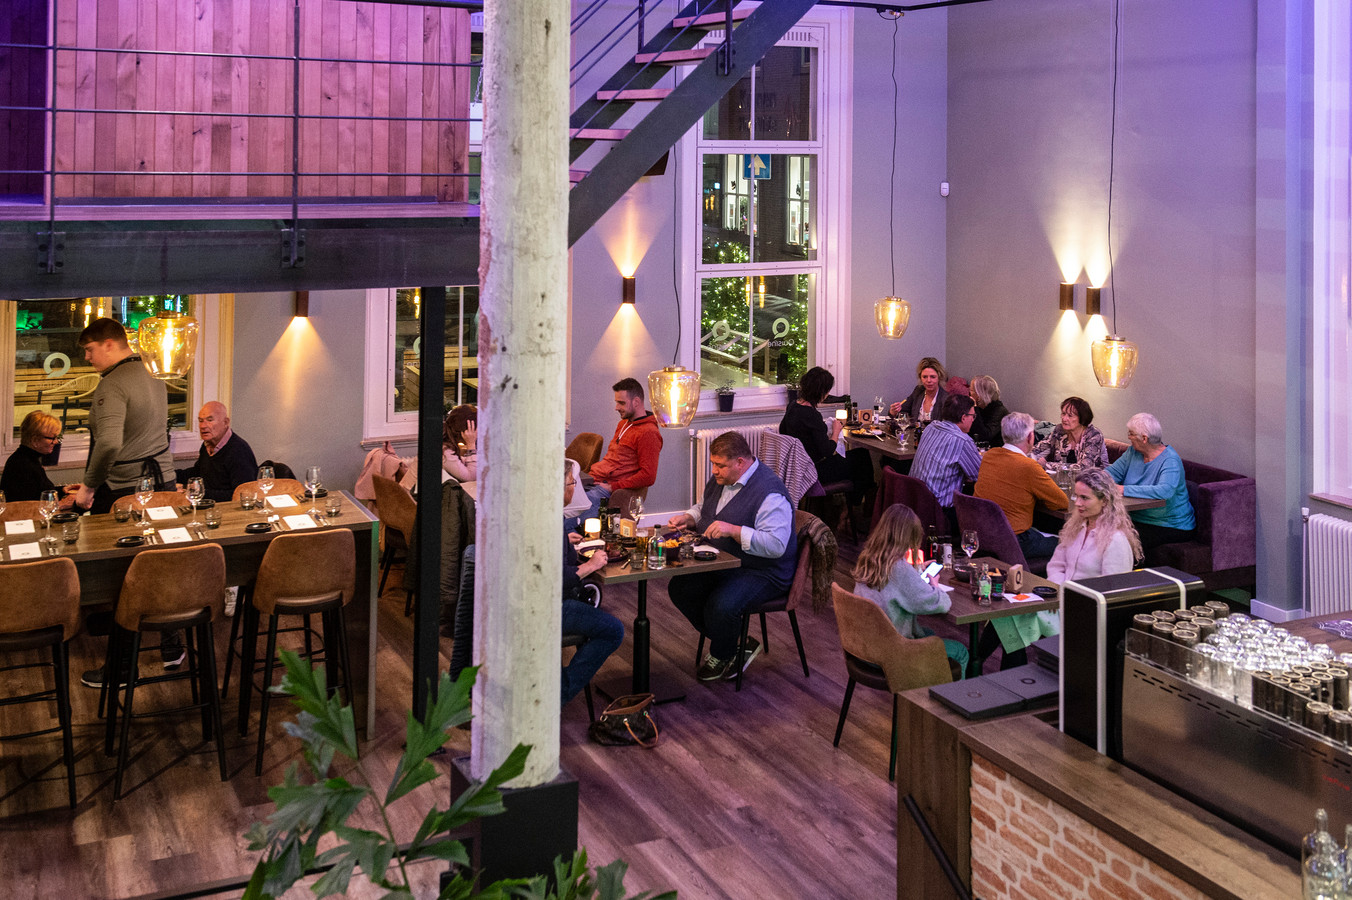 Restaurant Quisine zit in een fraai pand aan de Heuvel in Oosterhout en kent binnen diverse hoogteverschillen.